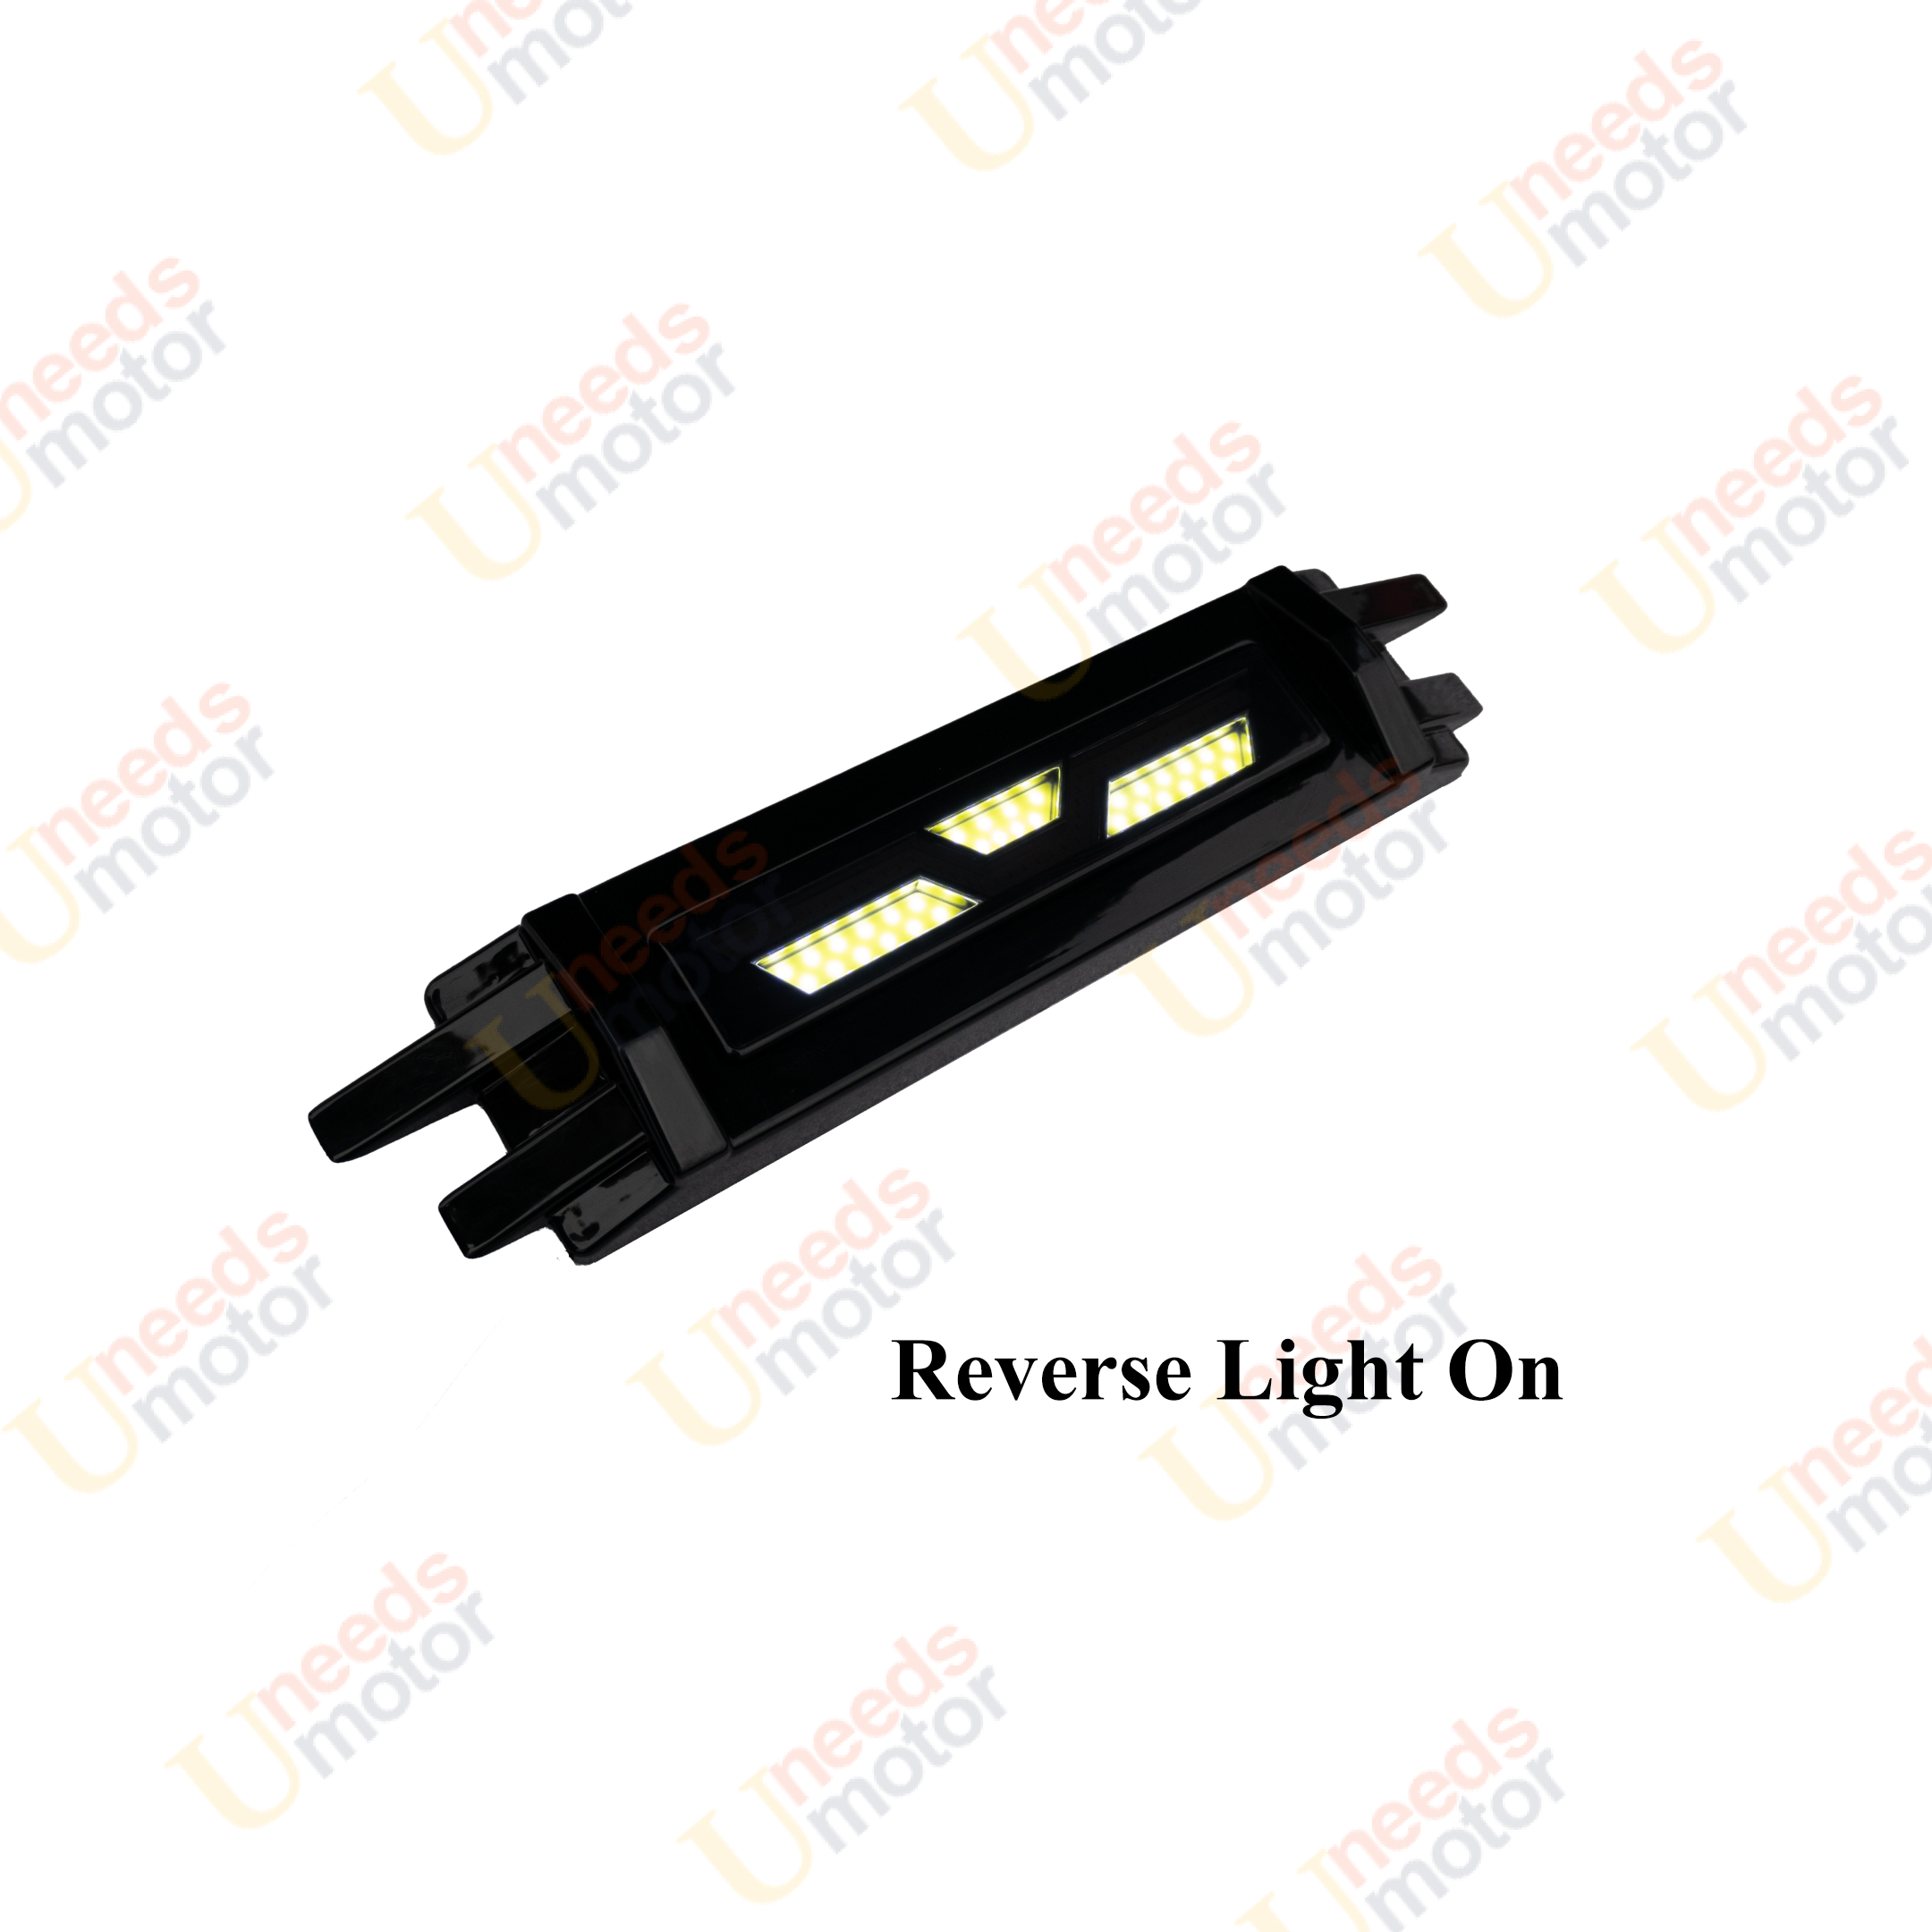 For Honda Civic Rear Lower Brake Reverse LED Light